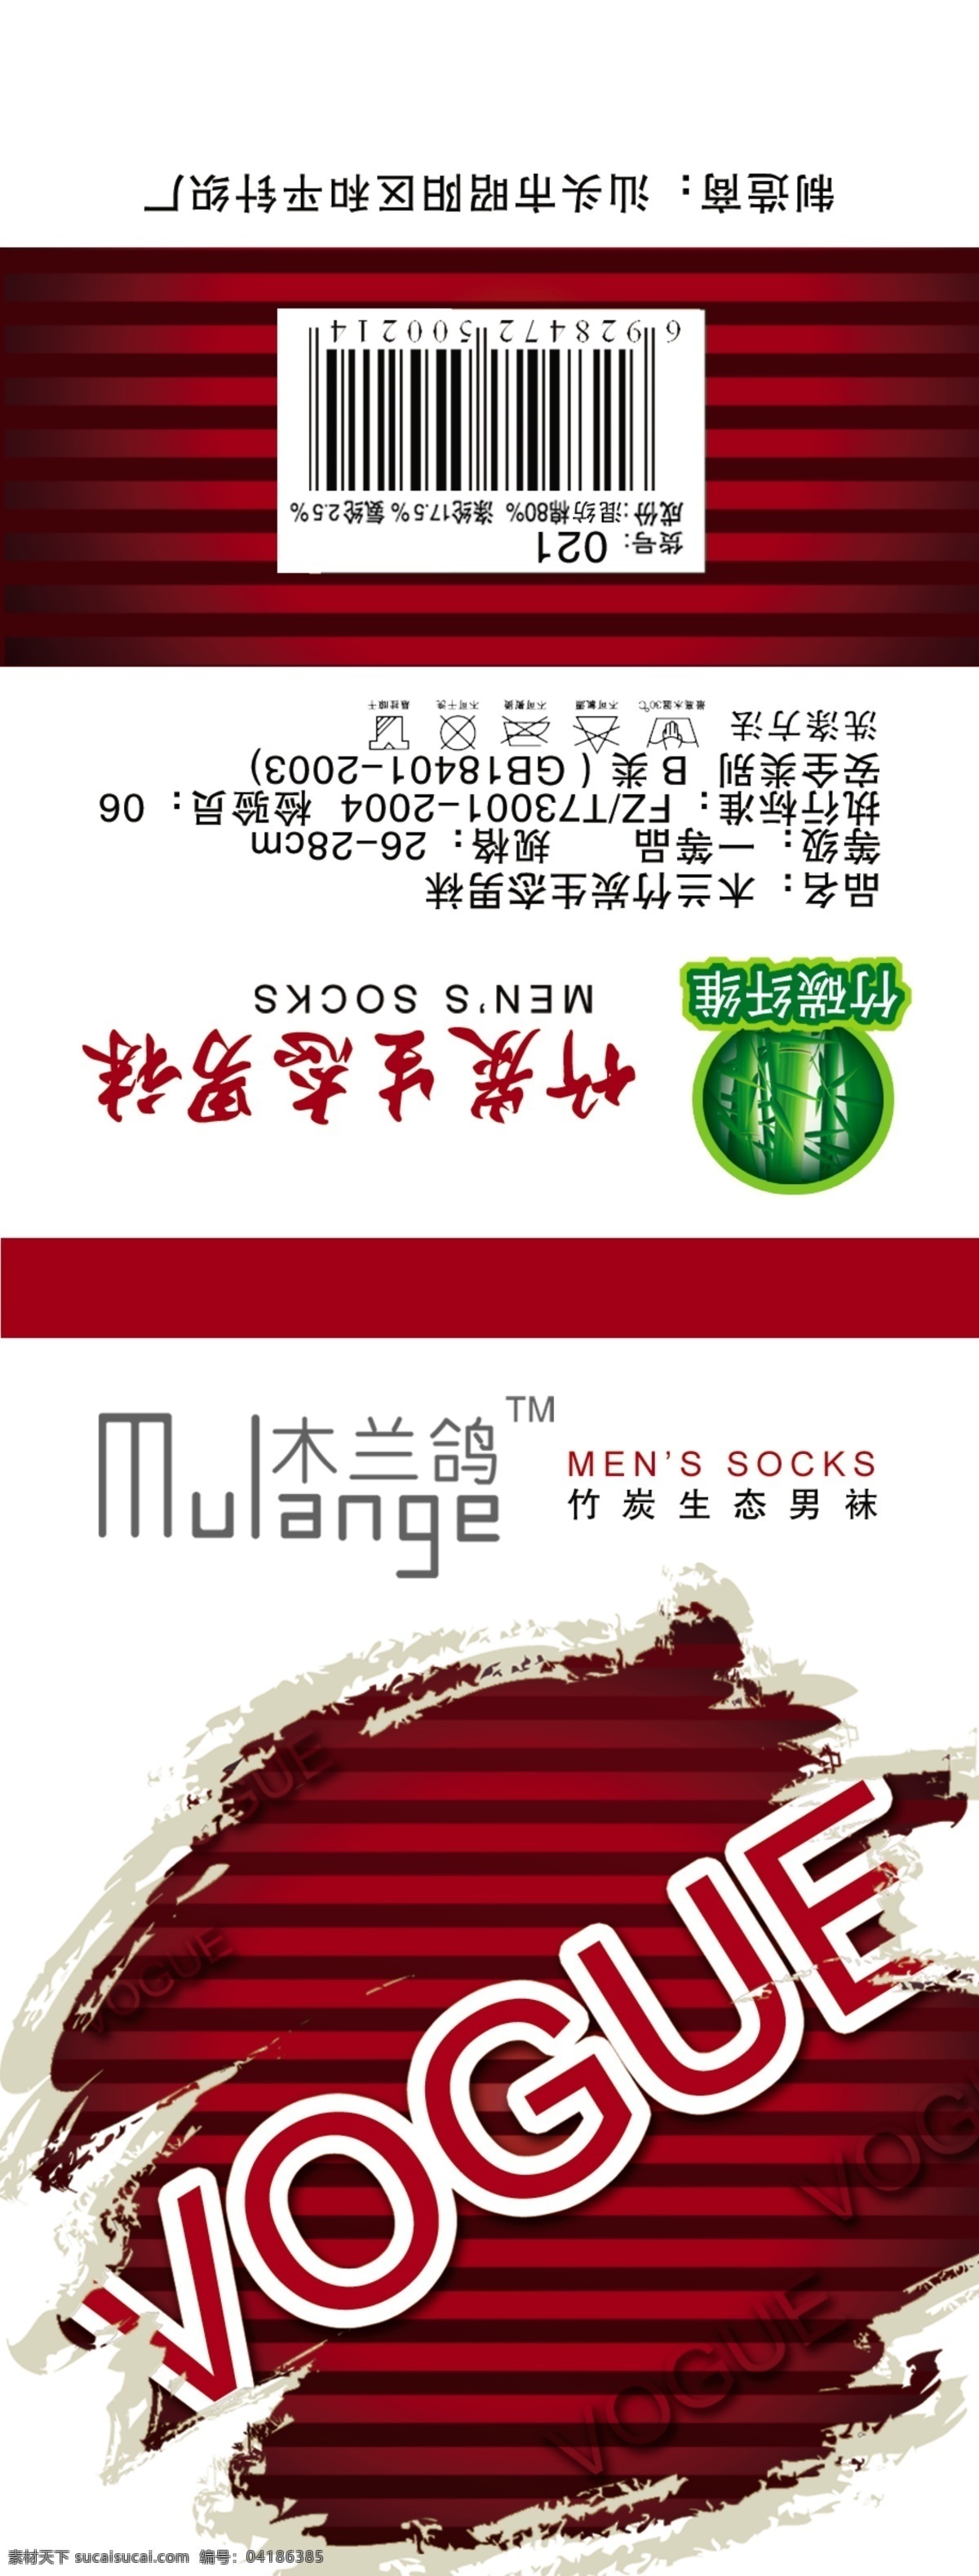 男袜标 男袜 袜标 时尚 男袜系列 cogue 条纹 竹炭生态 条码 木兰鸽 墨迹 包装设计 广告设计模板 源文件